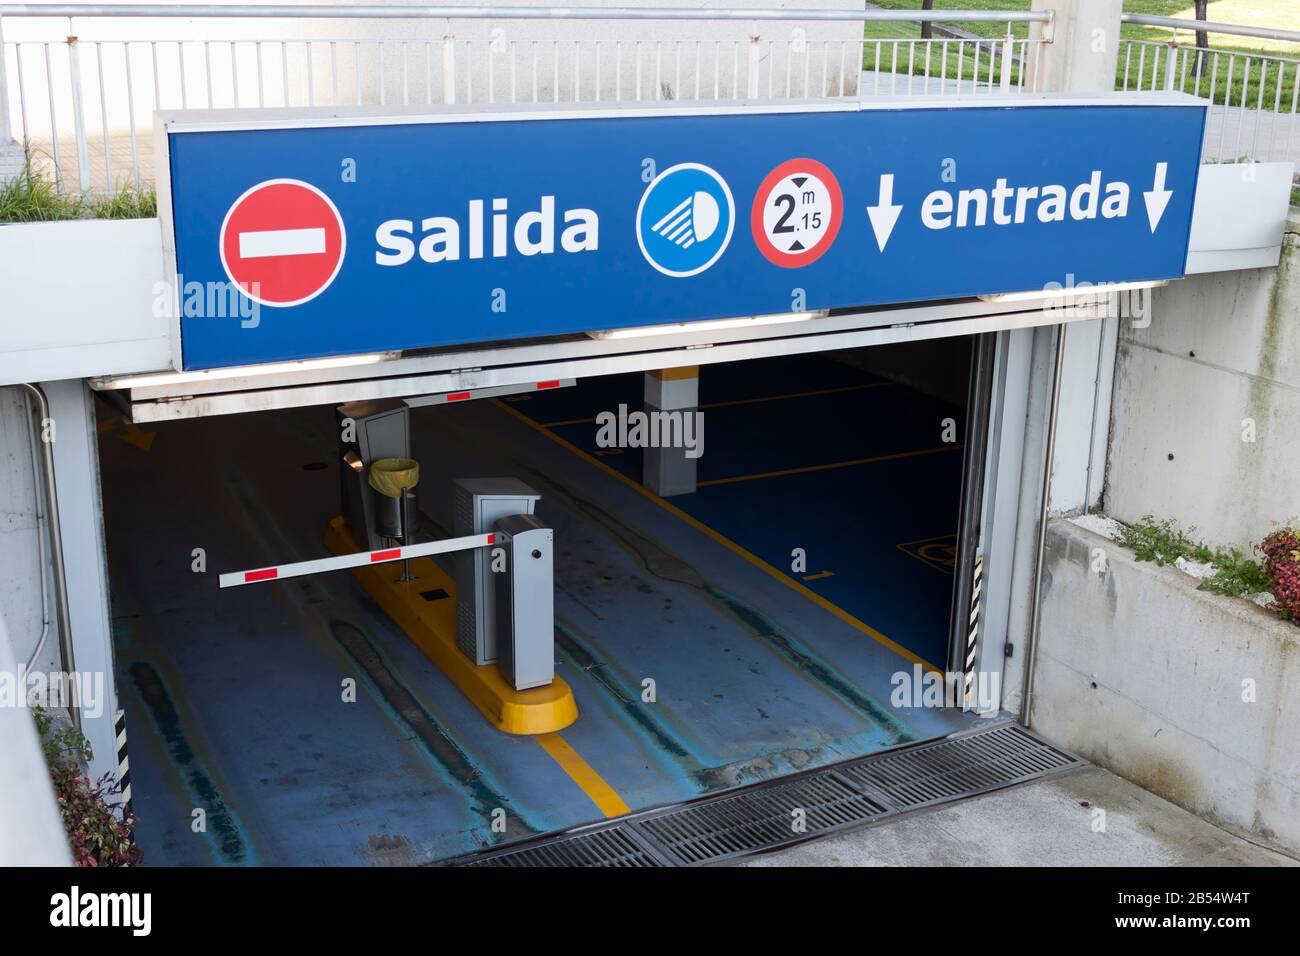 Salida, cartello entrada all'ingresso del parcheggio sotterraneo. Uscita, ingresso in spagnolo. Foto Stock